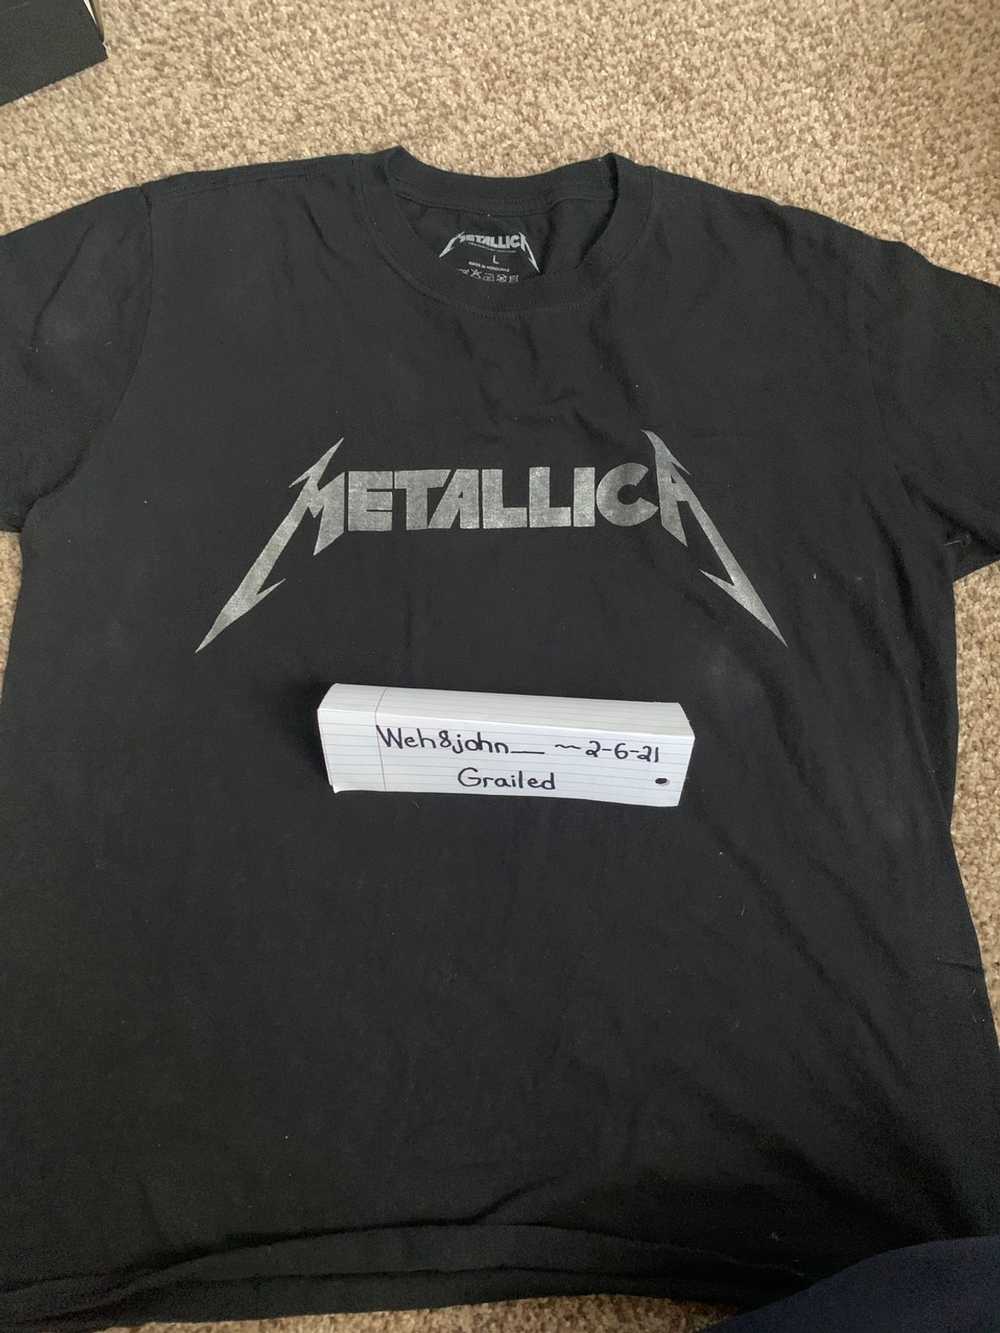 Metallica Vintage Metallic shirt - Gem